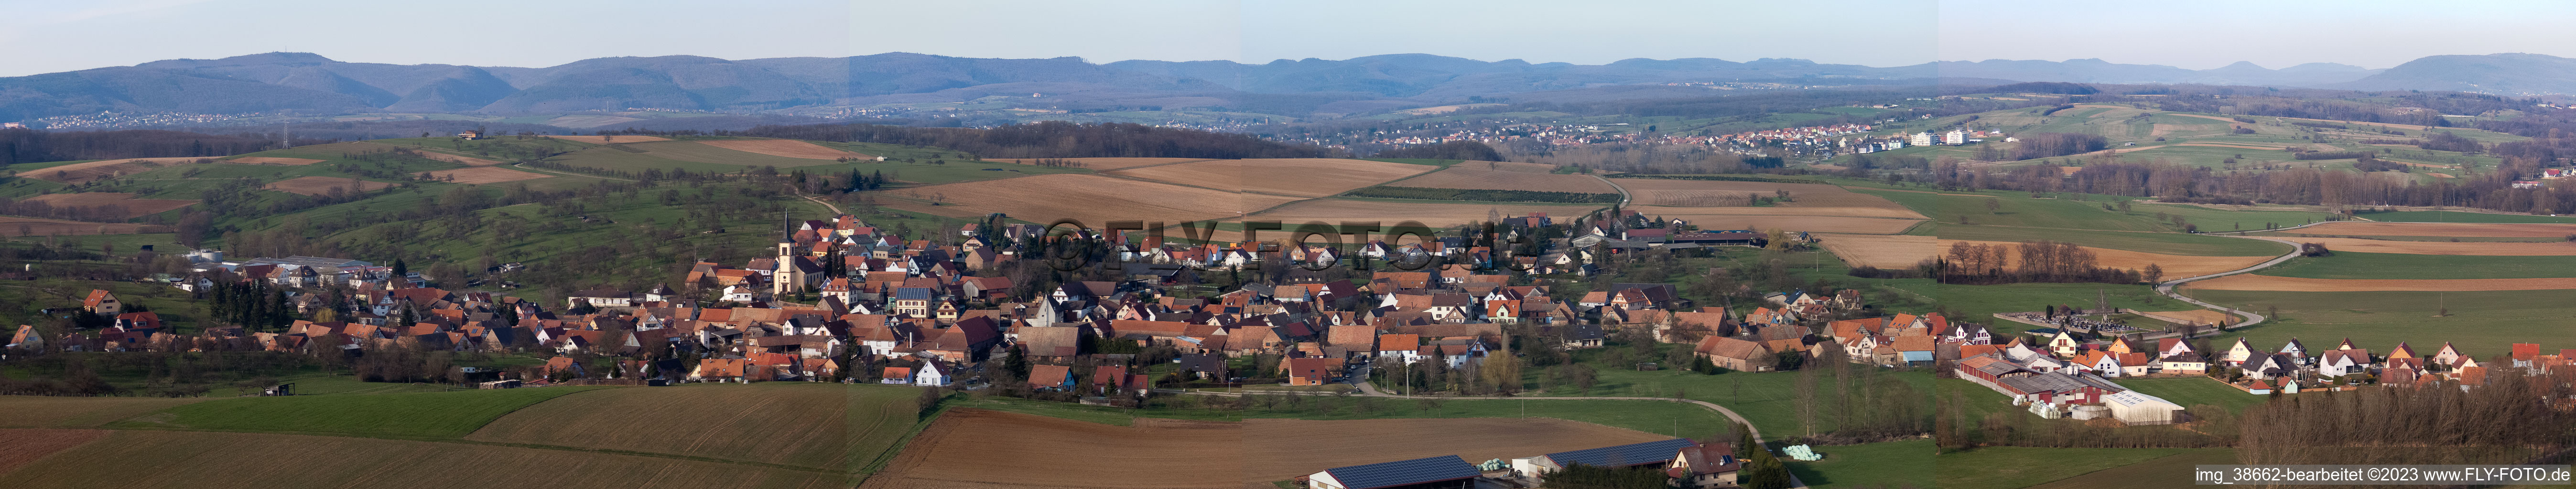 Vue aérienne de Champs agricoles et terres agricoles en perspective panoramique à Mietesheim dans le département Bas Rhin, France